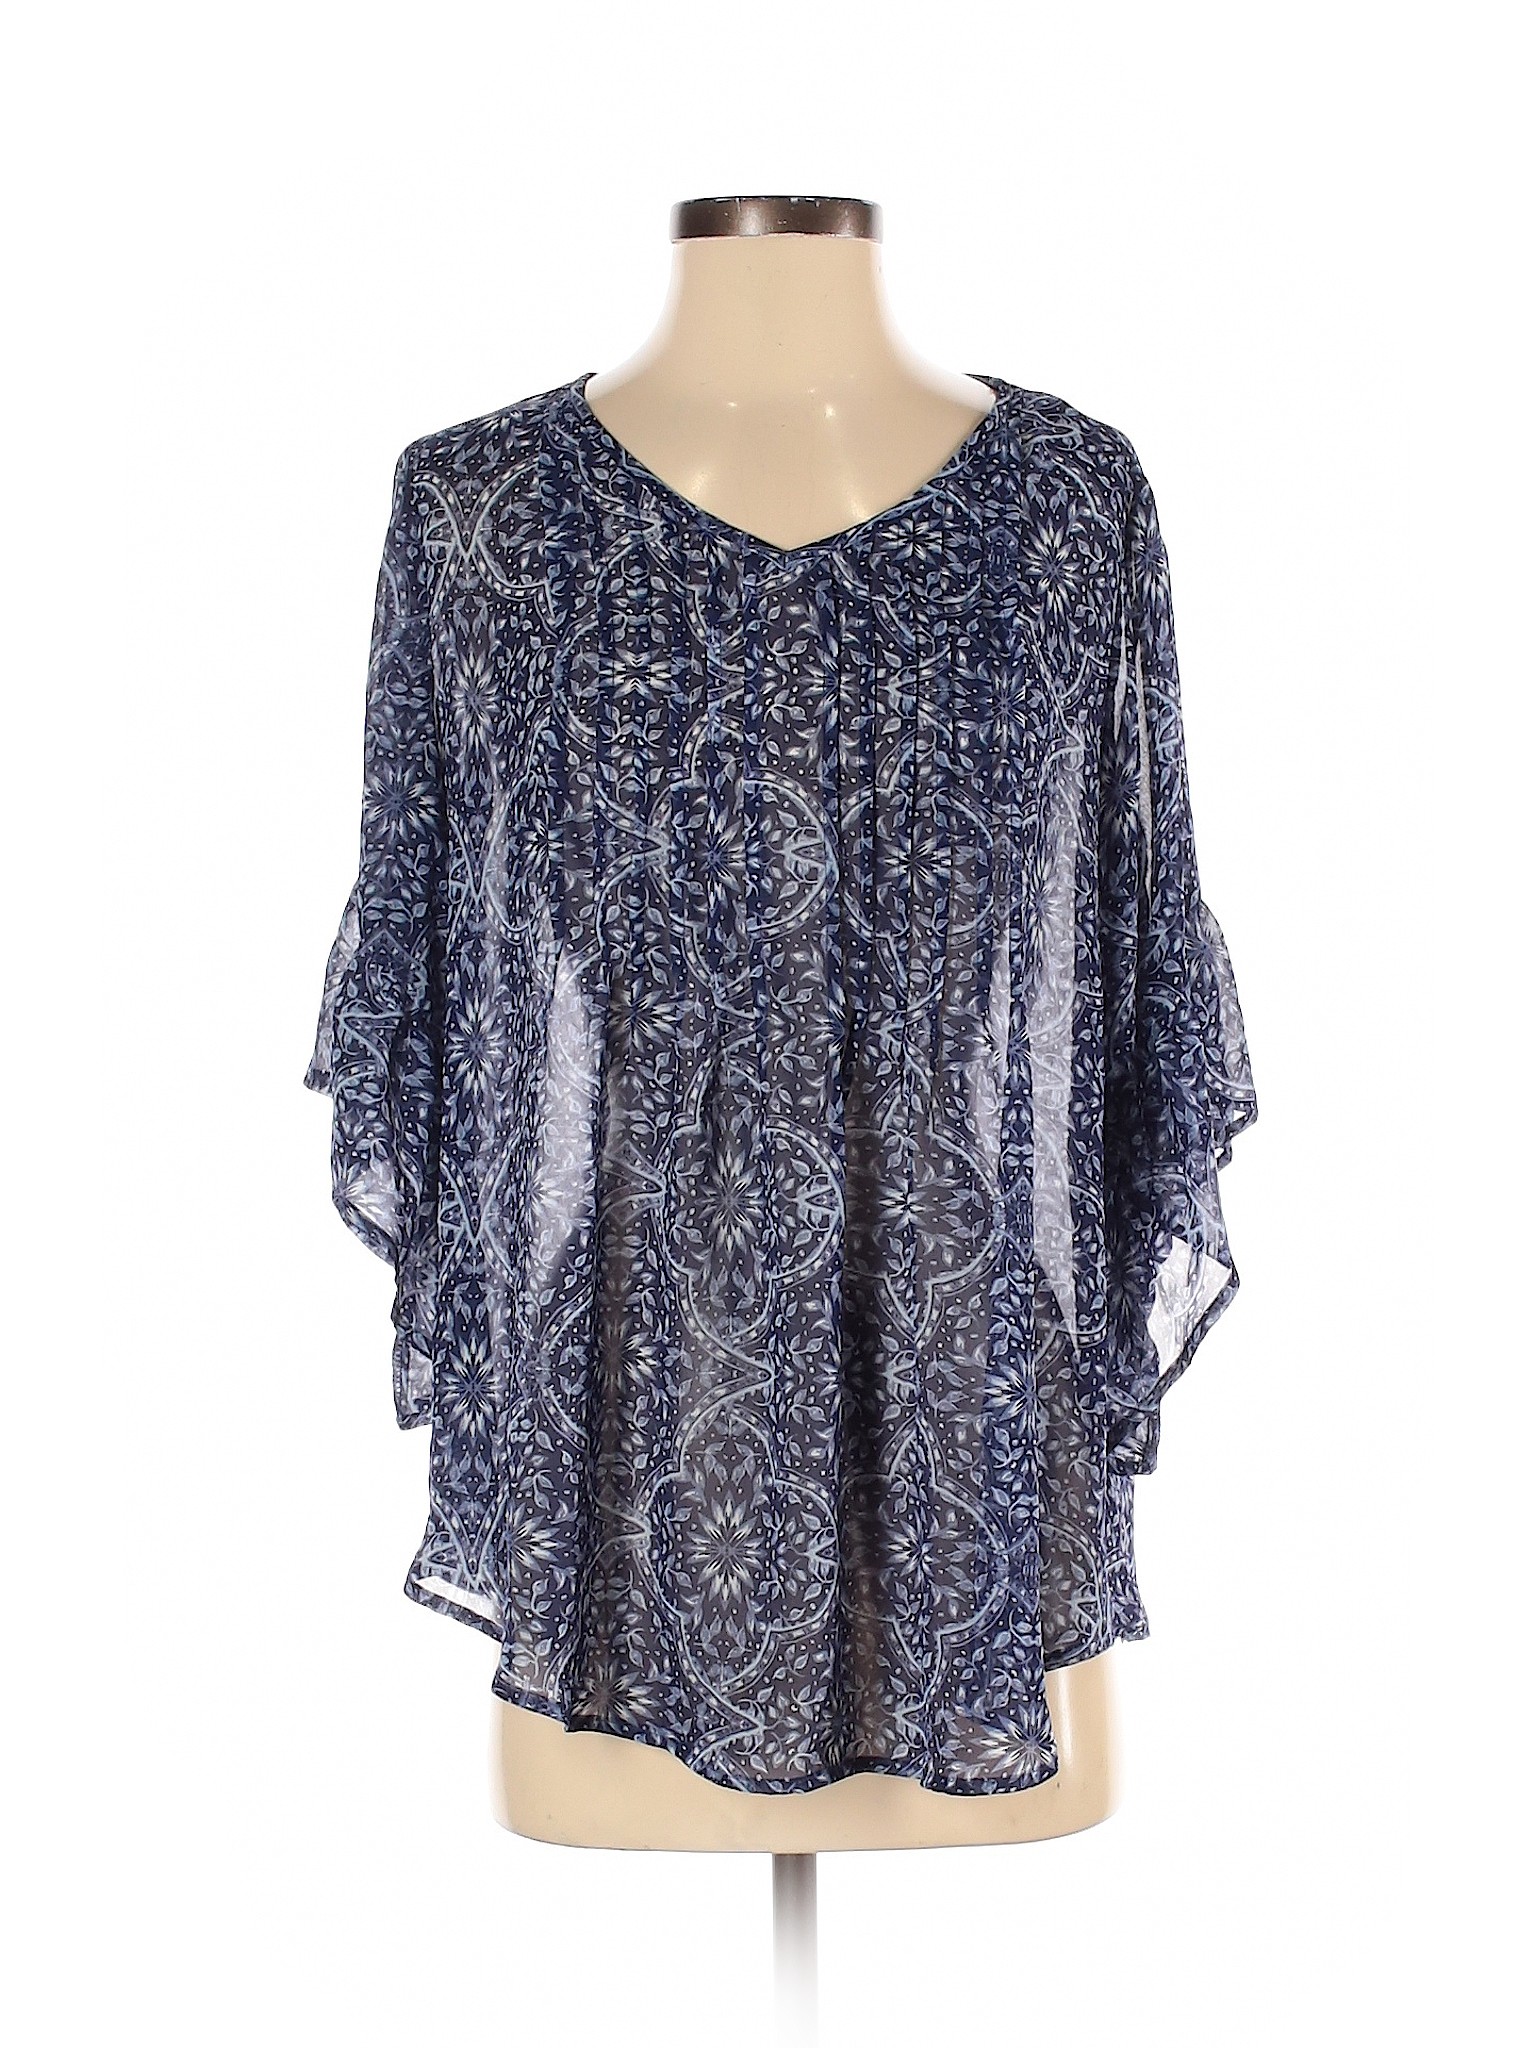 Style&Co Women Blue 3/4 Sleeve Blouse S | eBay